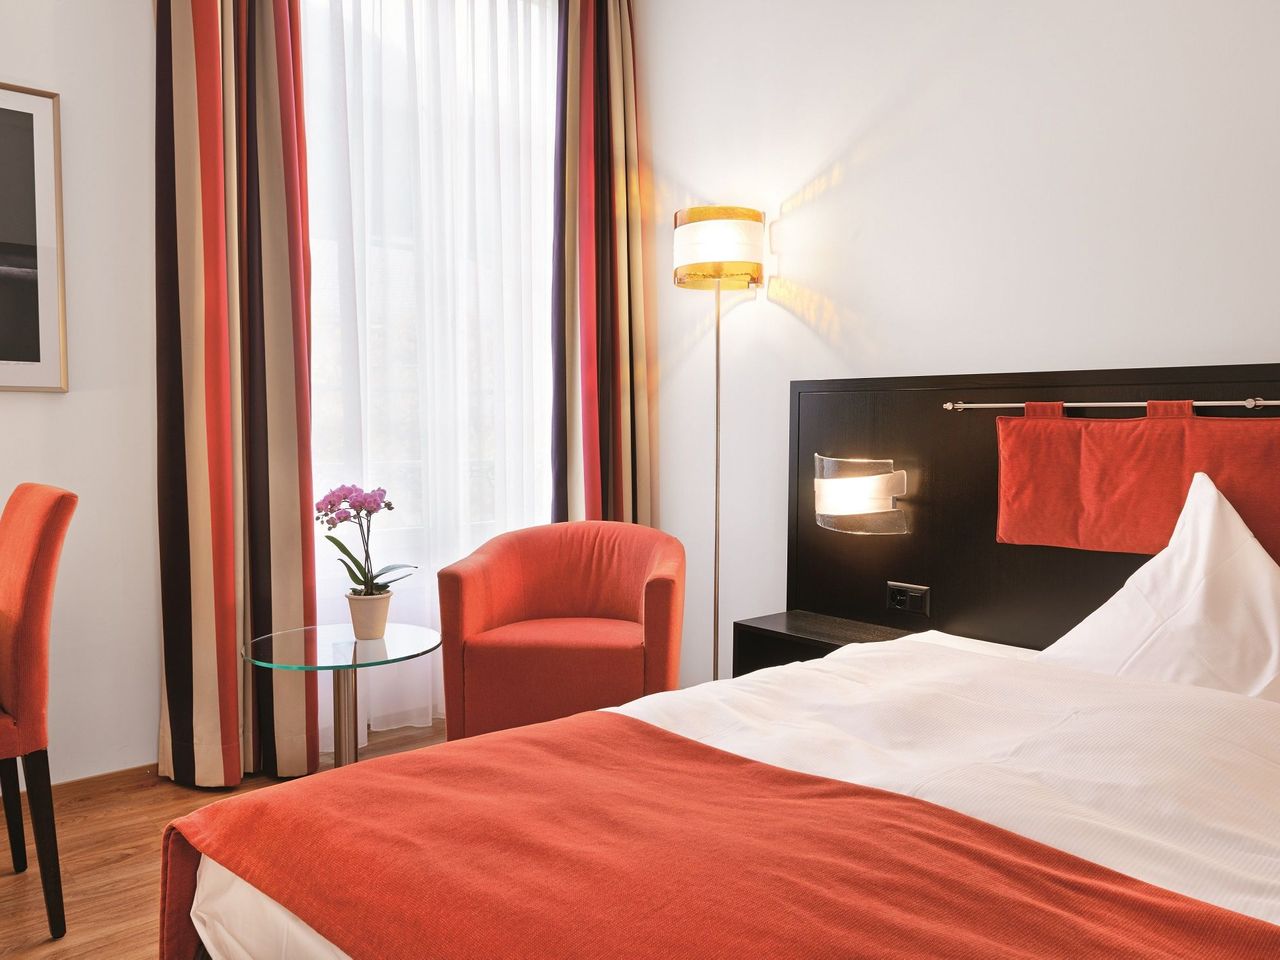 3 Tage Schweiz entdecken im Sorell Hotel Tamina